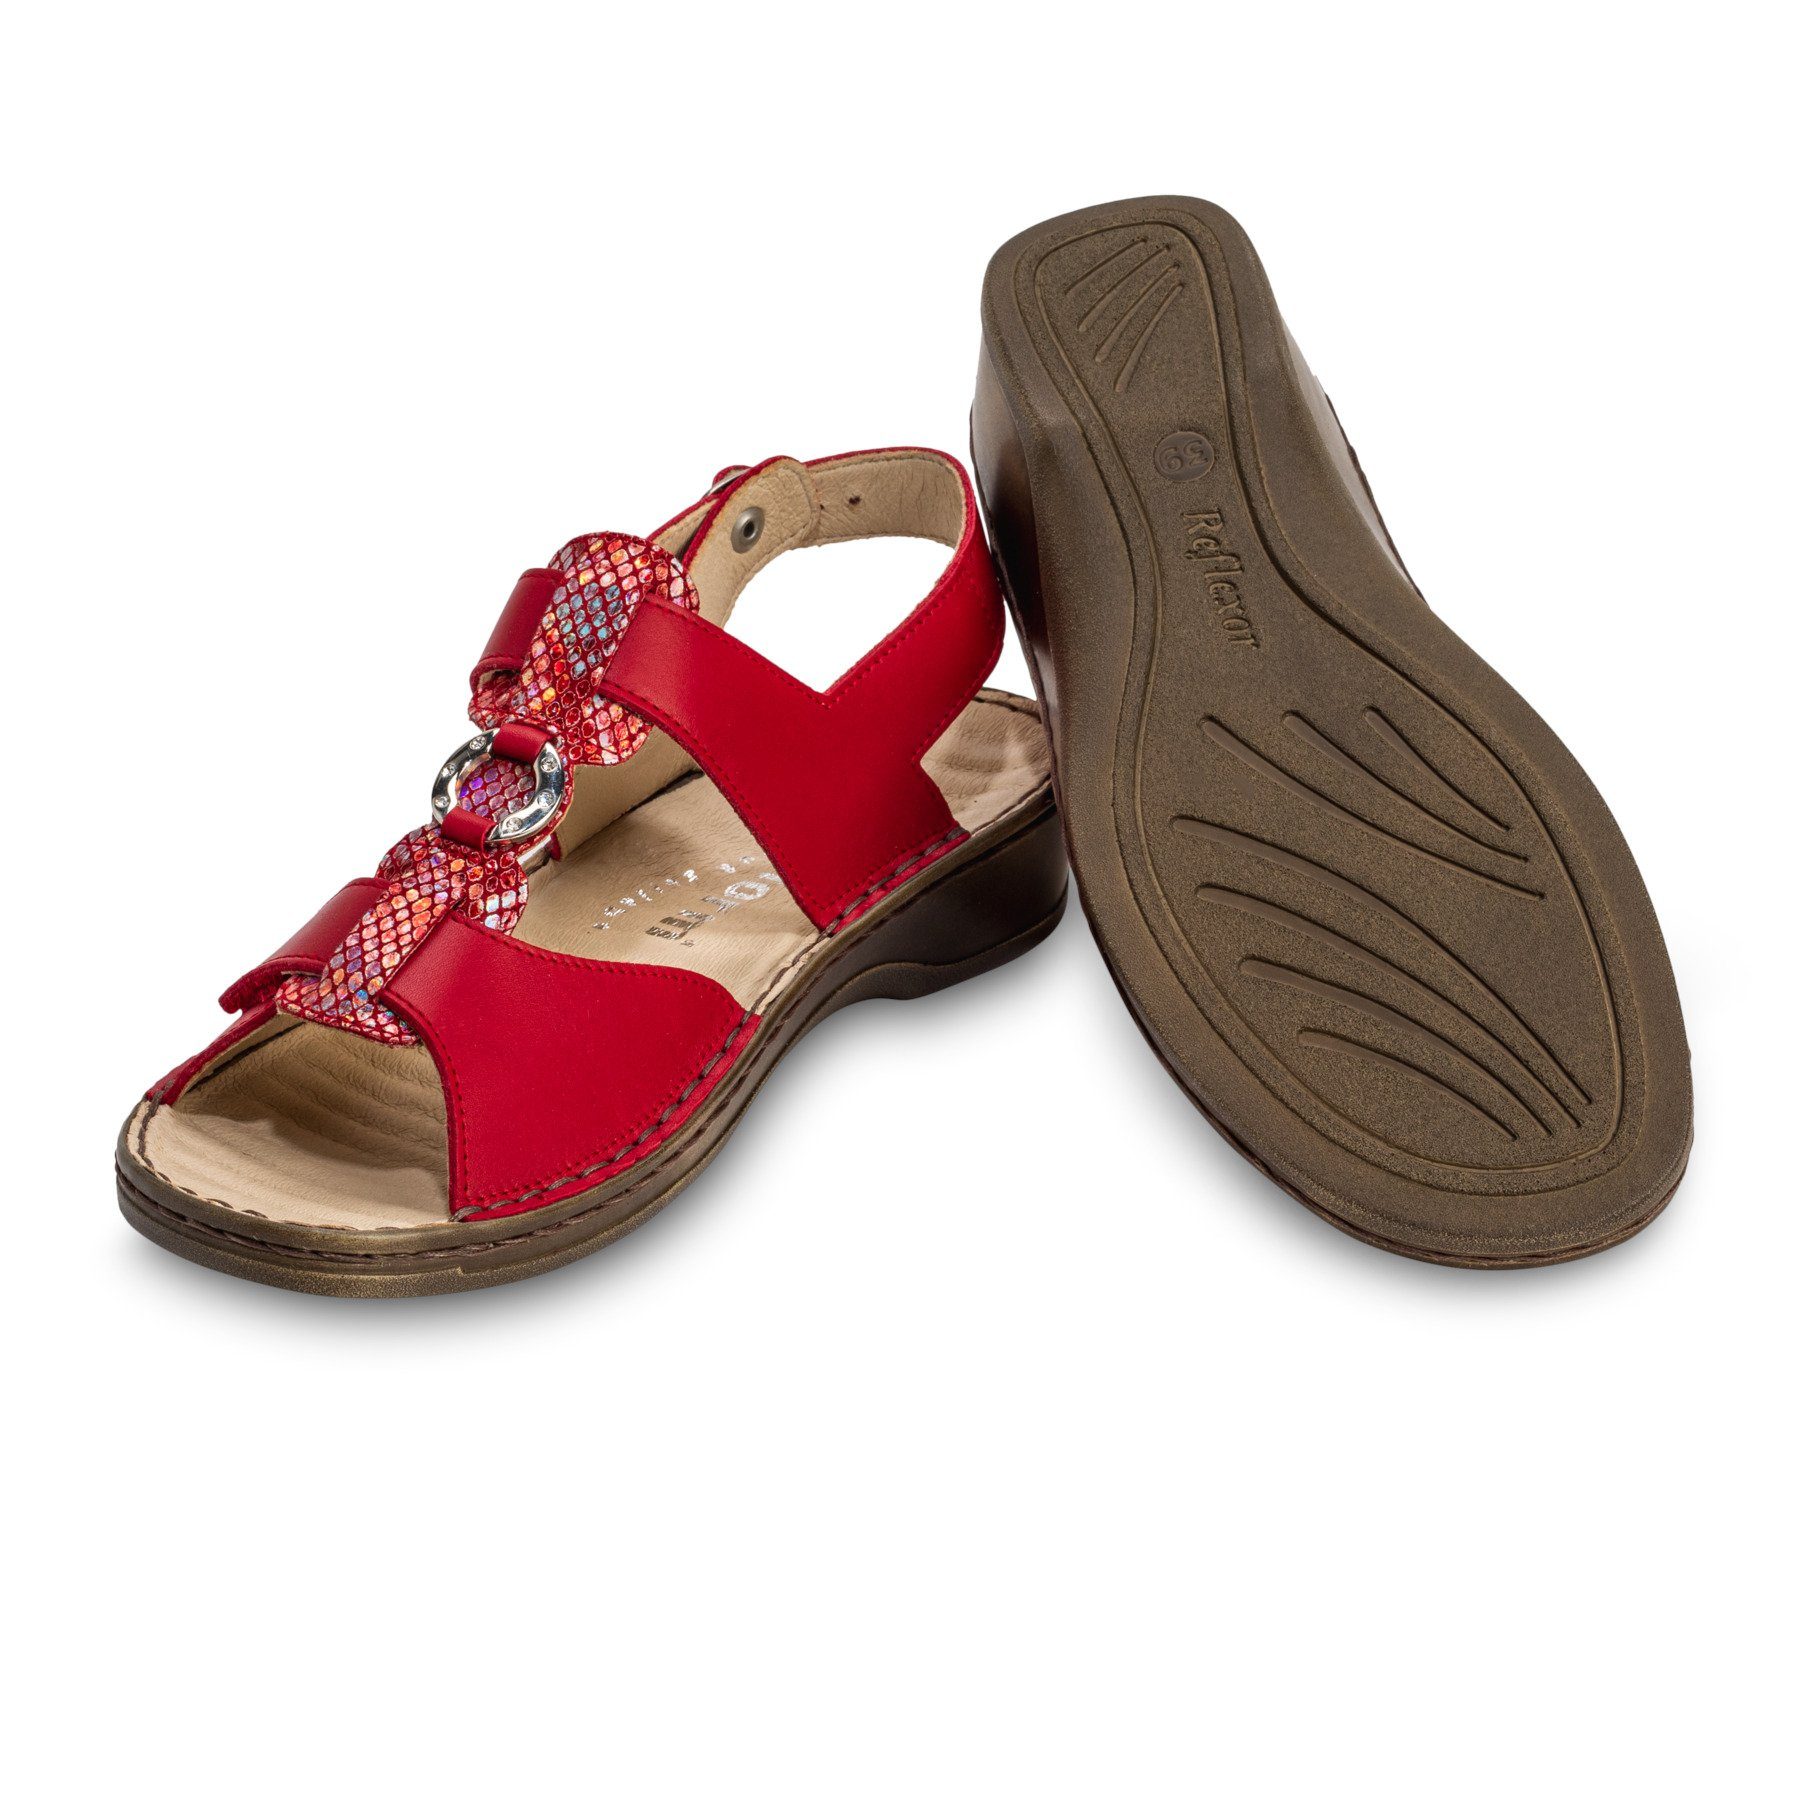 Sandale Damenschuhe rot Leder Sandalette echt vitaform